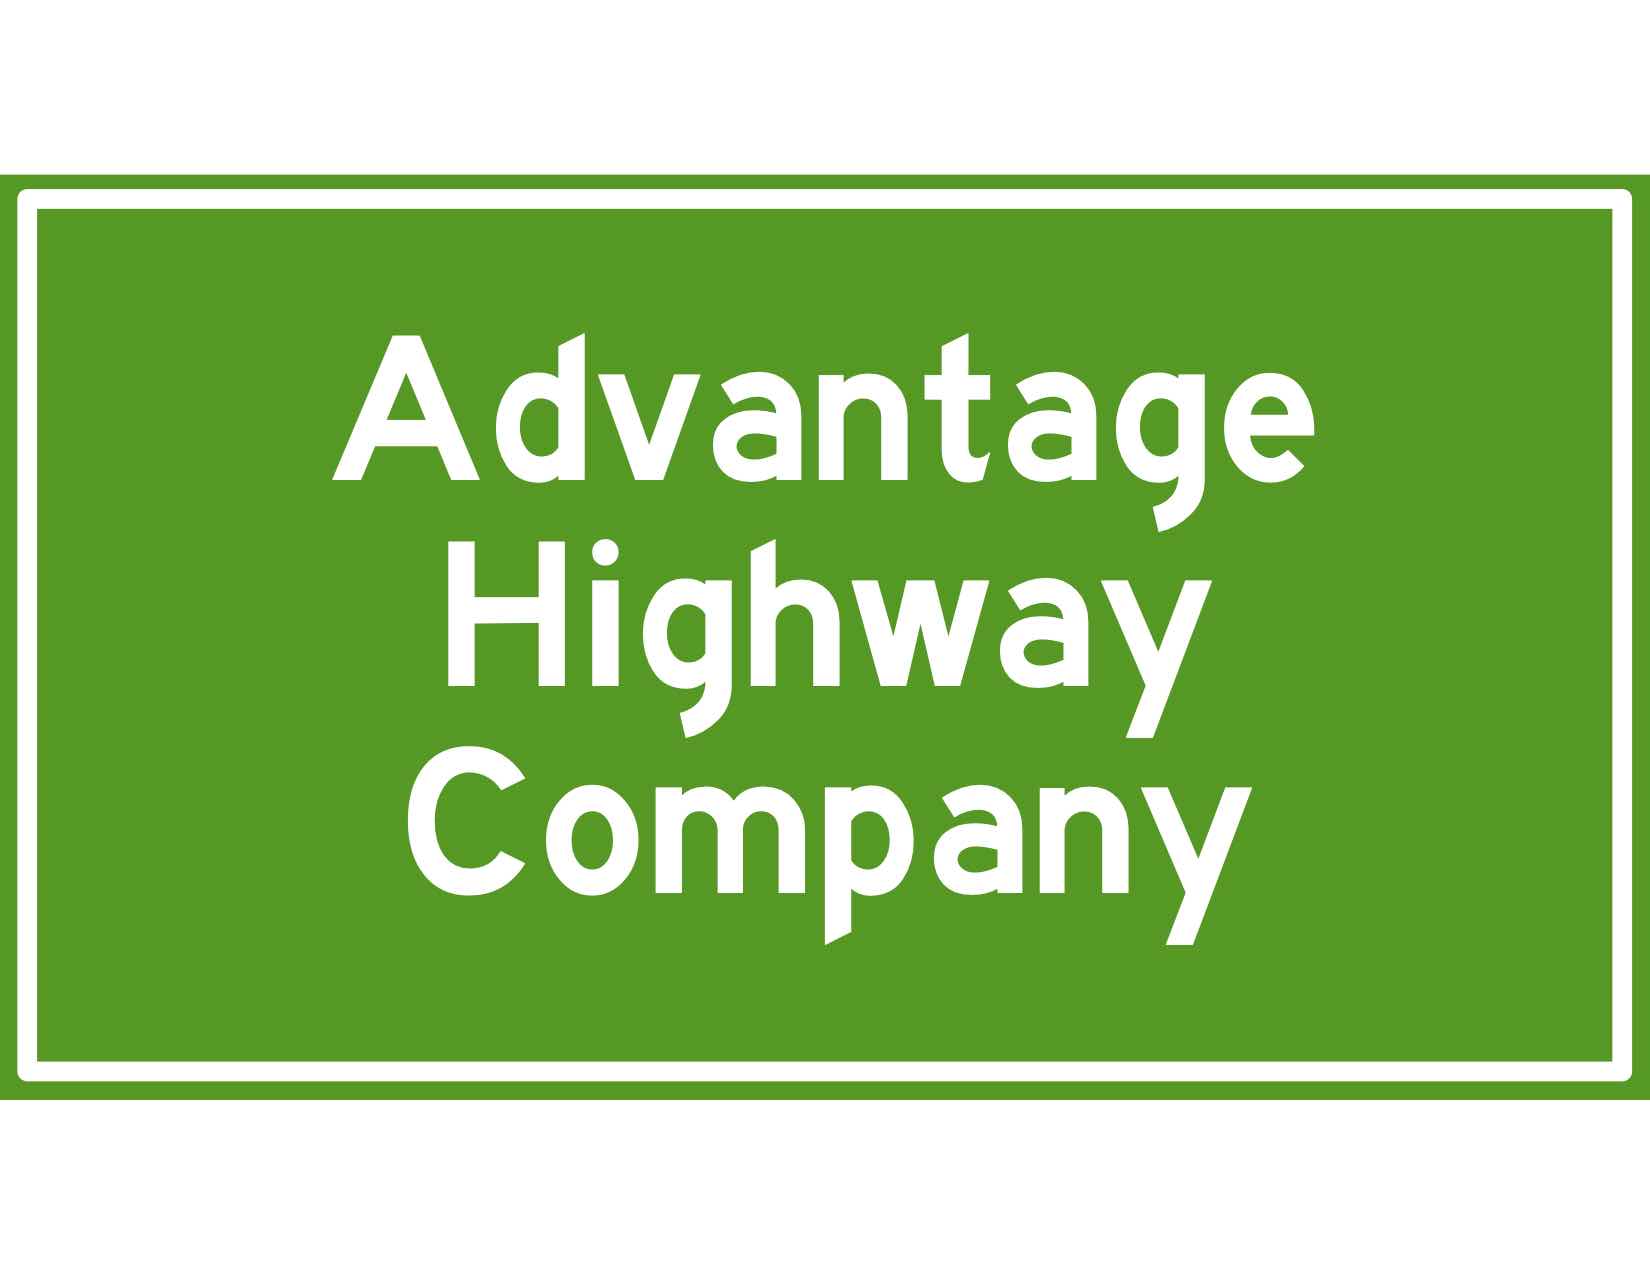 Advantage Highway Company